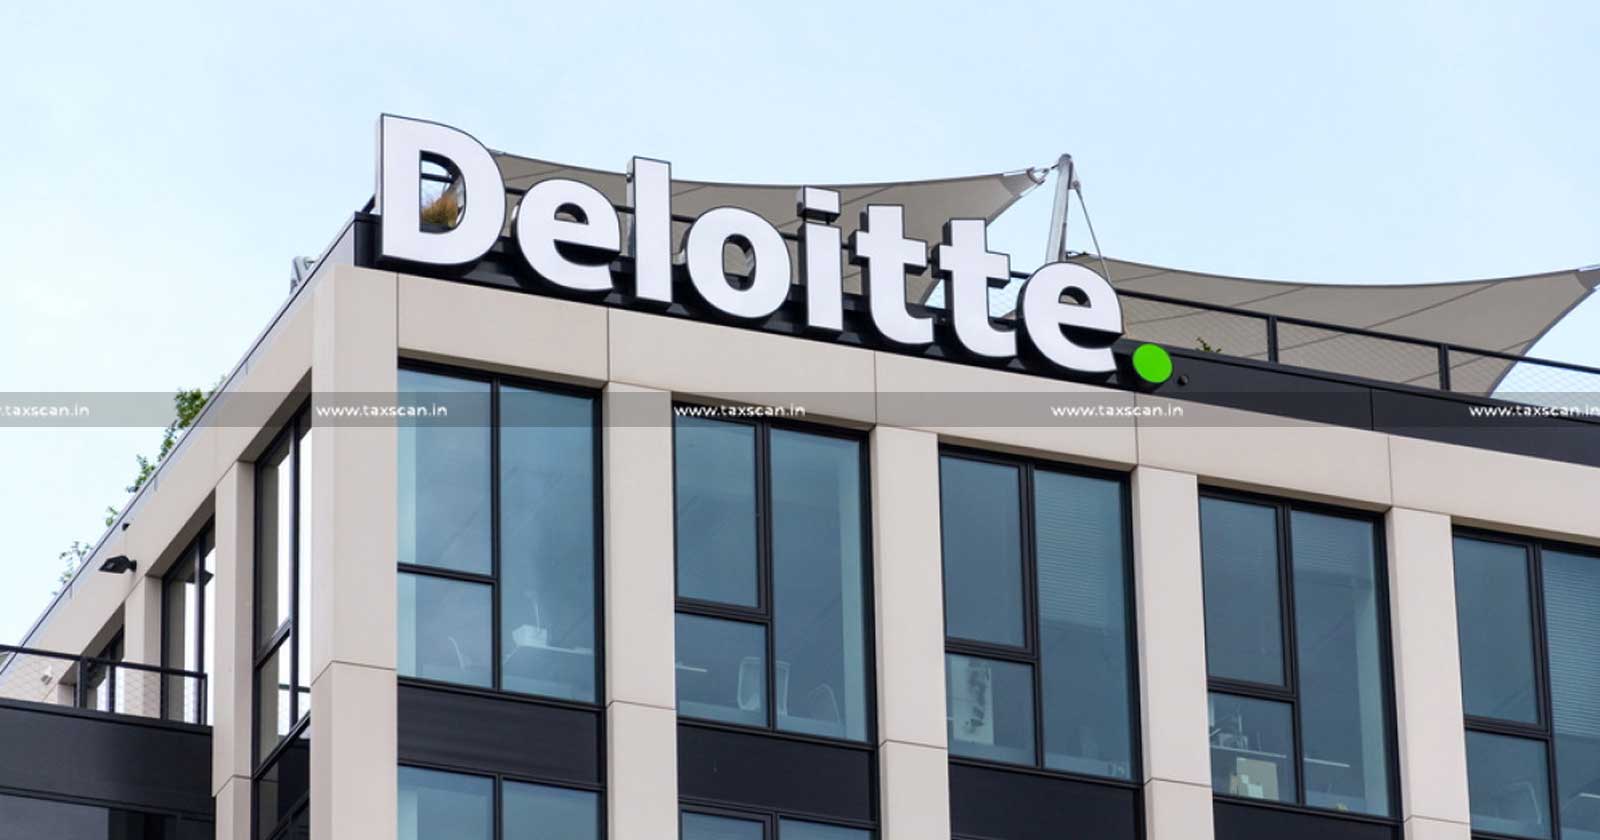 CA vacancy in Deloitte - Deloitte hiring - Deloitte careers - CA jobs in Deloitte - CA job opportunities in Deloitte - Jobscan